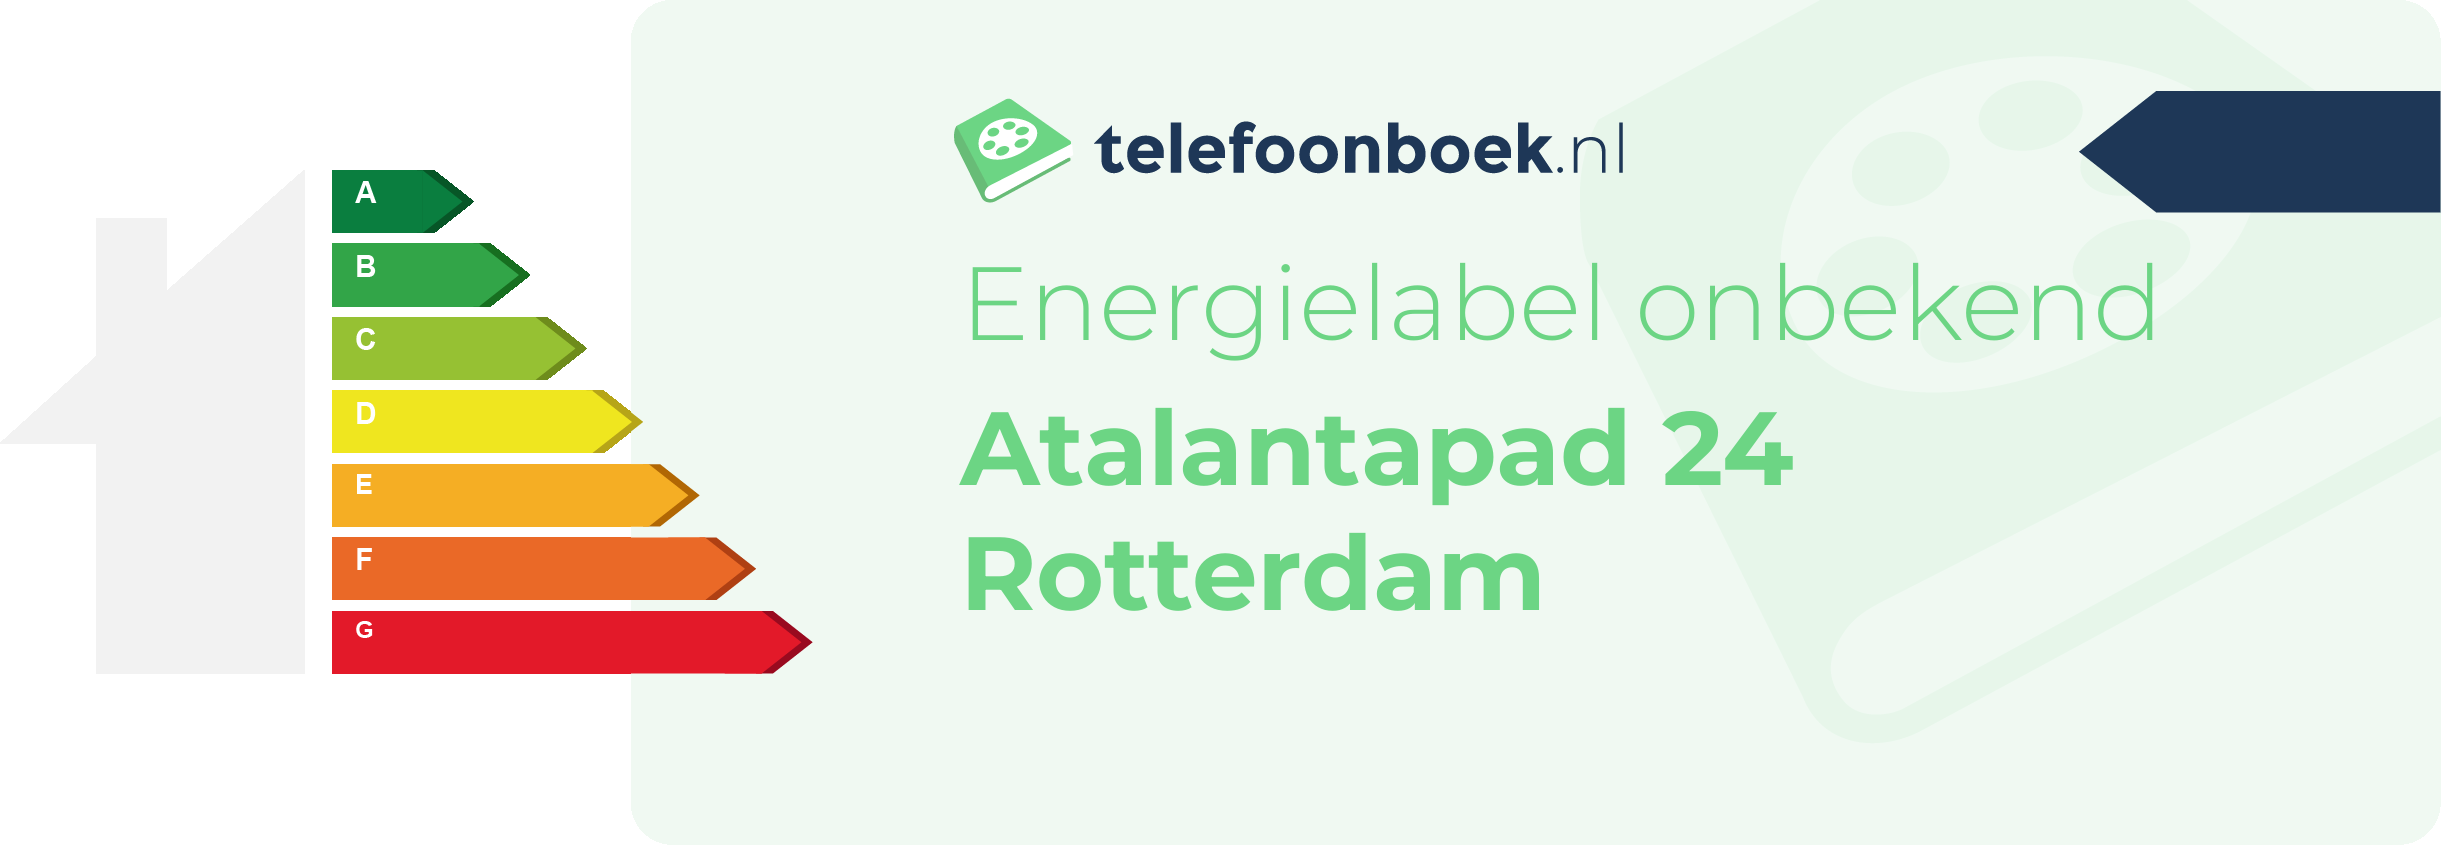 Energielabel Atalantapad 24 Rotterdam